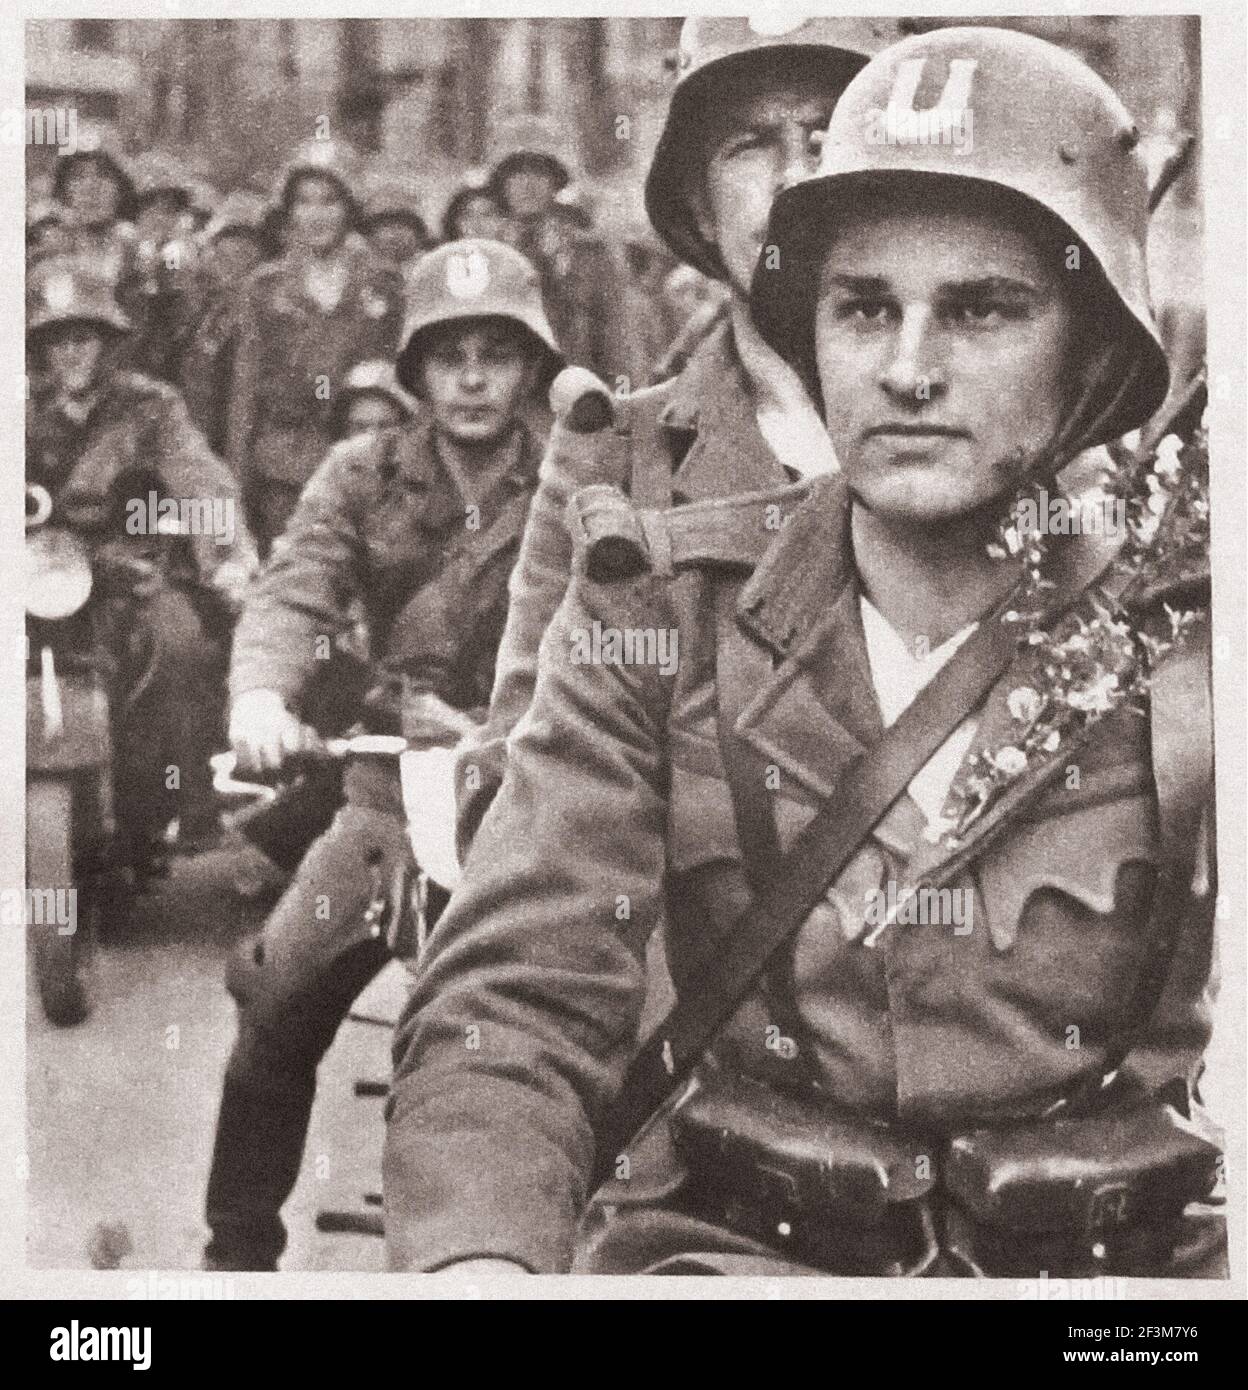 Seconda guerra mondiale dalle notizie della propaganda tedesca. Soldati croati del movimento rivoluzionario croato (Ustashe). 1941 Foto Stock